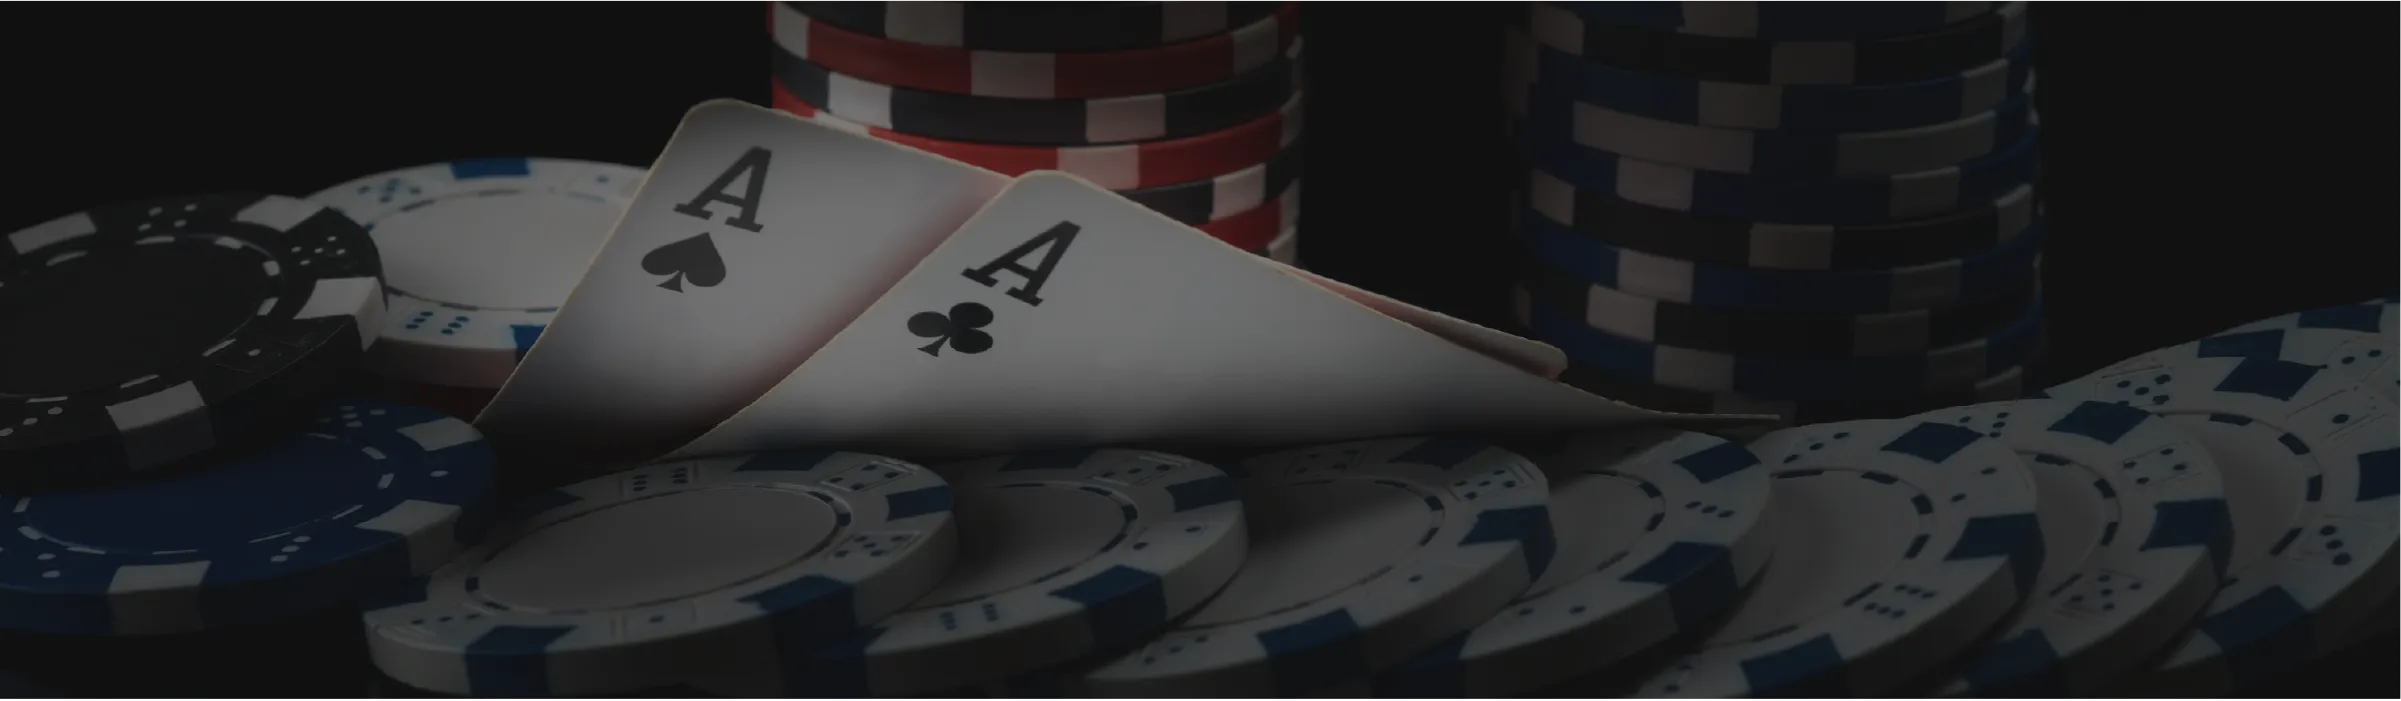 Slots casinos online wolverine 464216